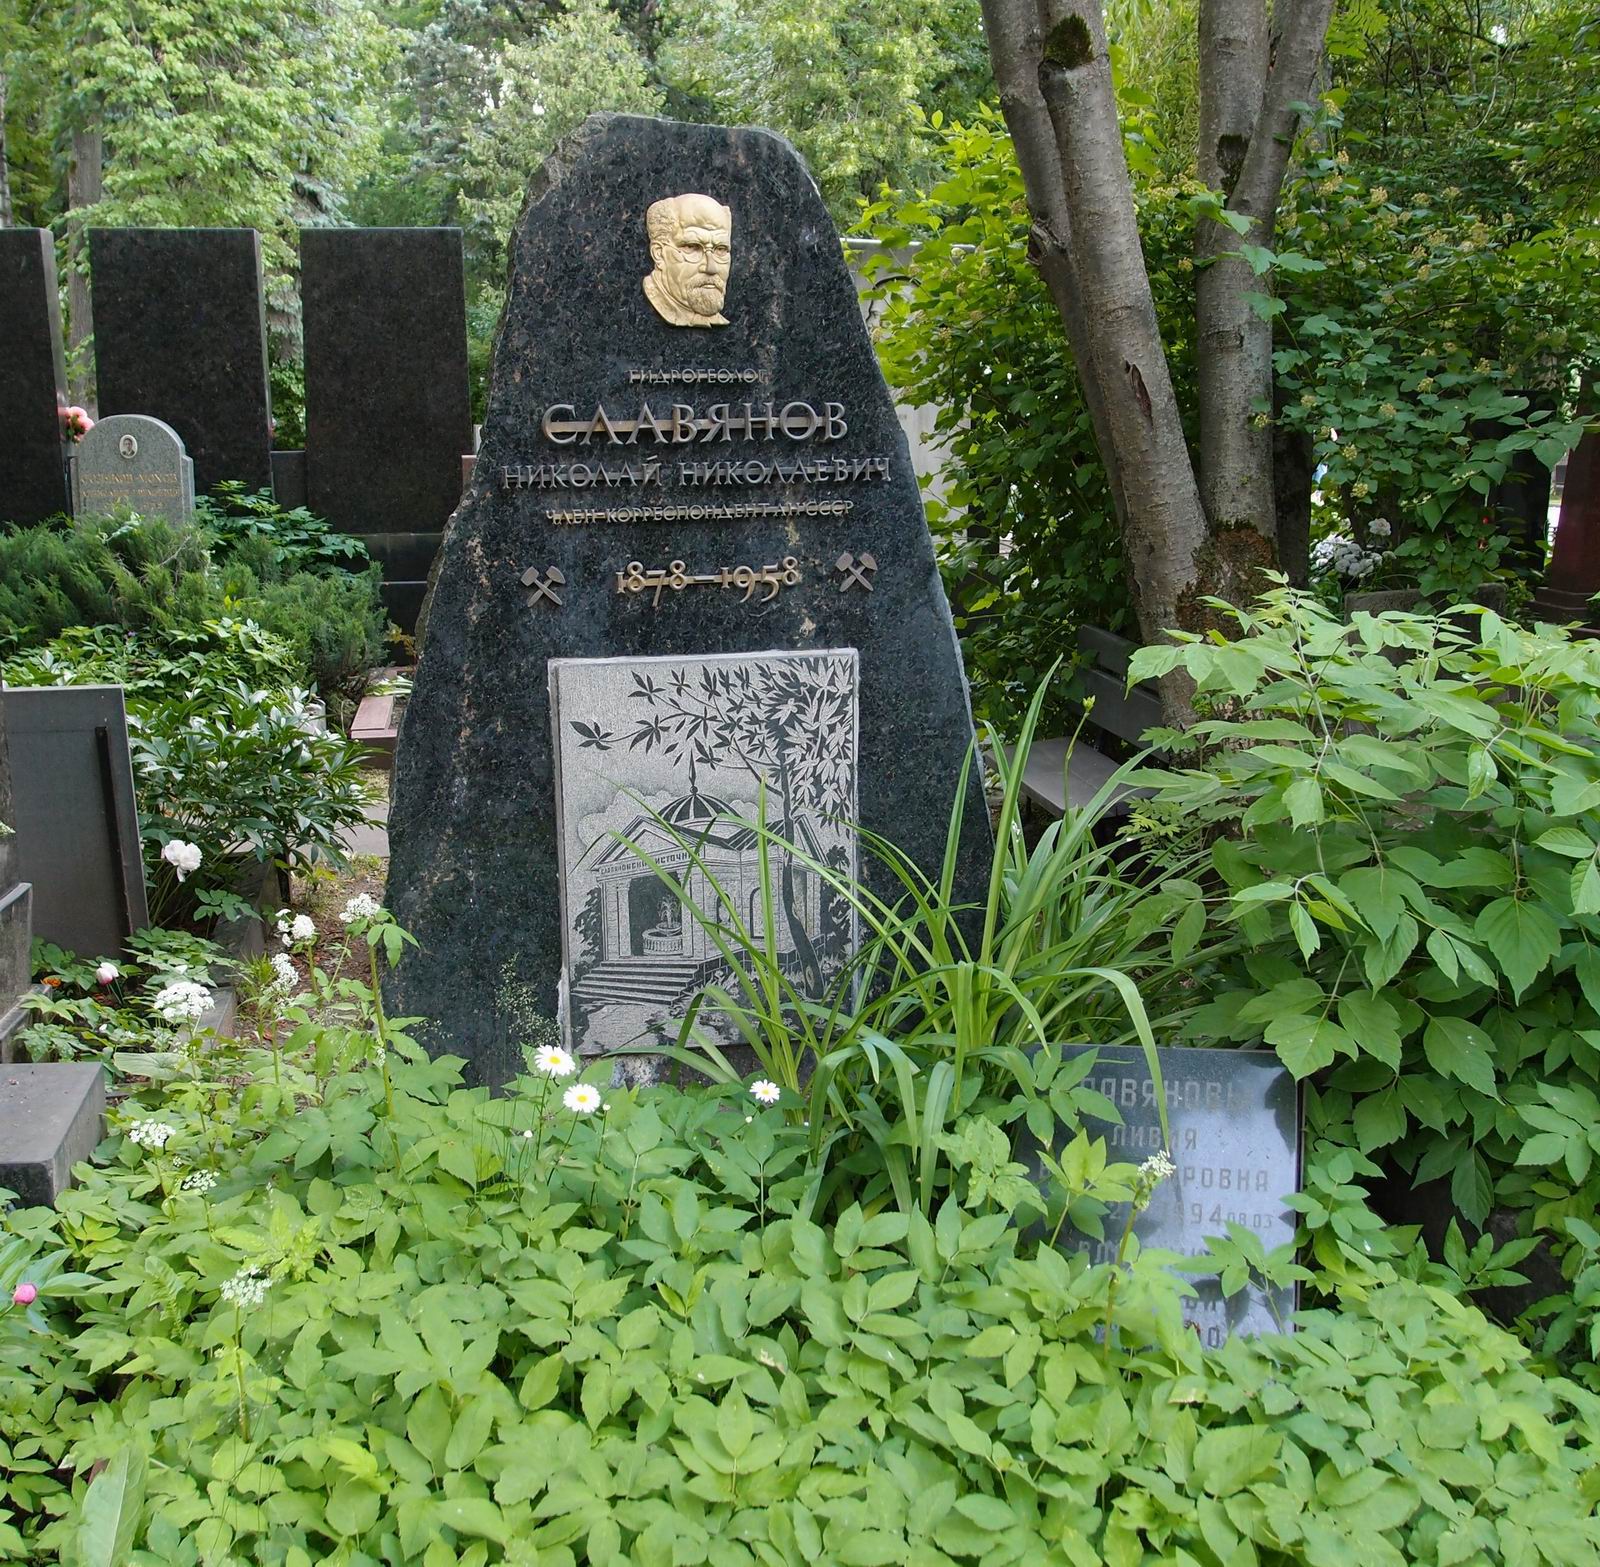 Памятник на могиле Славянова Н.Н. (1878–1958), худ. А.Петров, на Новодевичьем кладбище (5–27–4). Нажмите левую кнопку мыши чтобы увидеть фрагмент памятника.